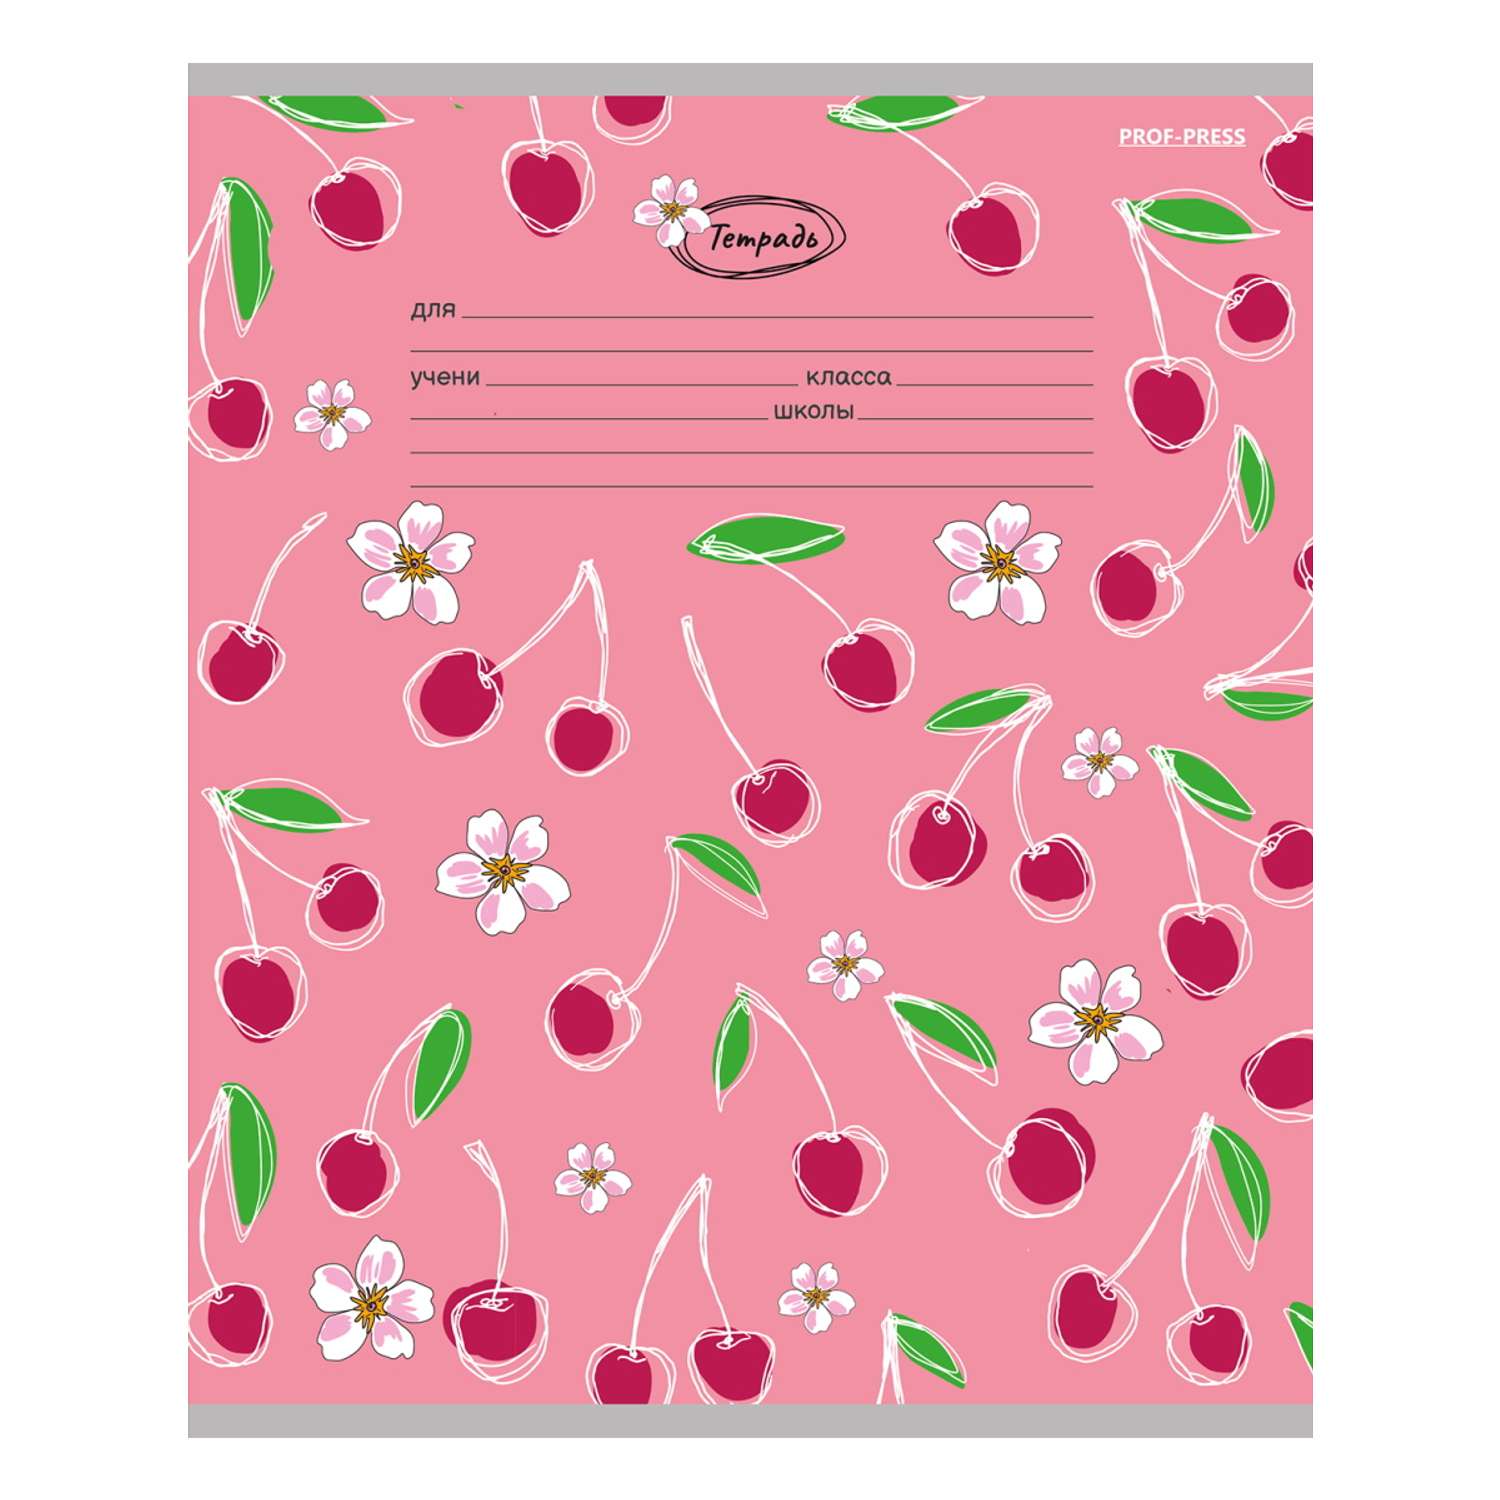 Тетради Prof Press Линия 18л. ягодки и цветы цветная мелованная обложка комплект 10 штук - фото 4